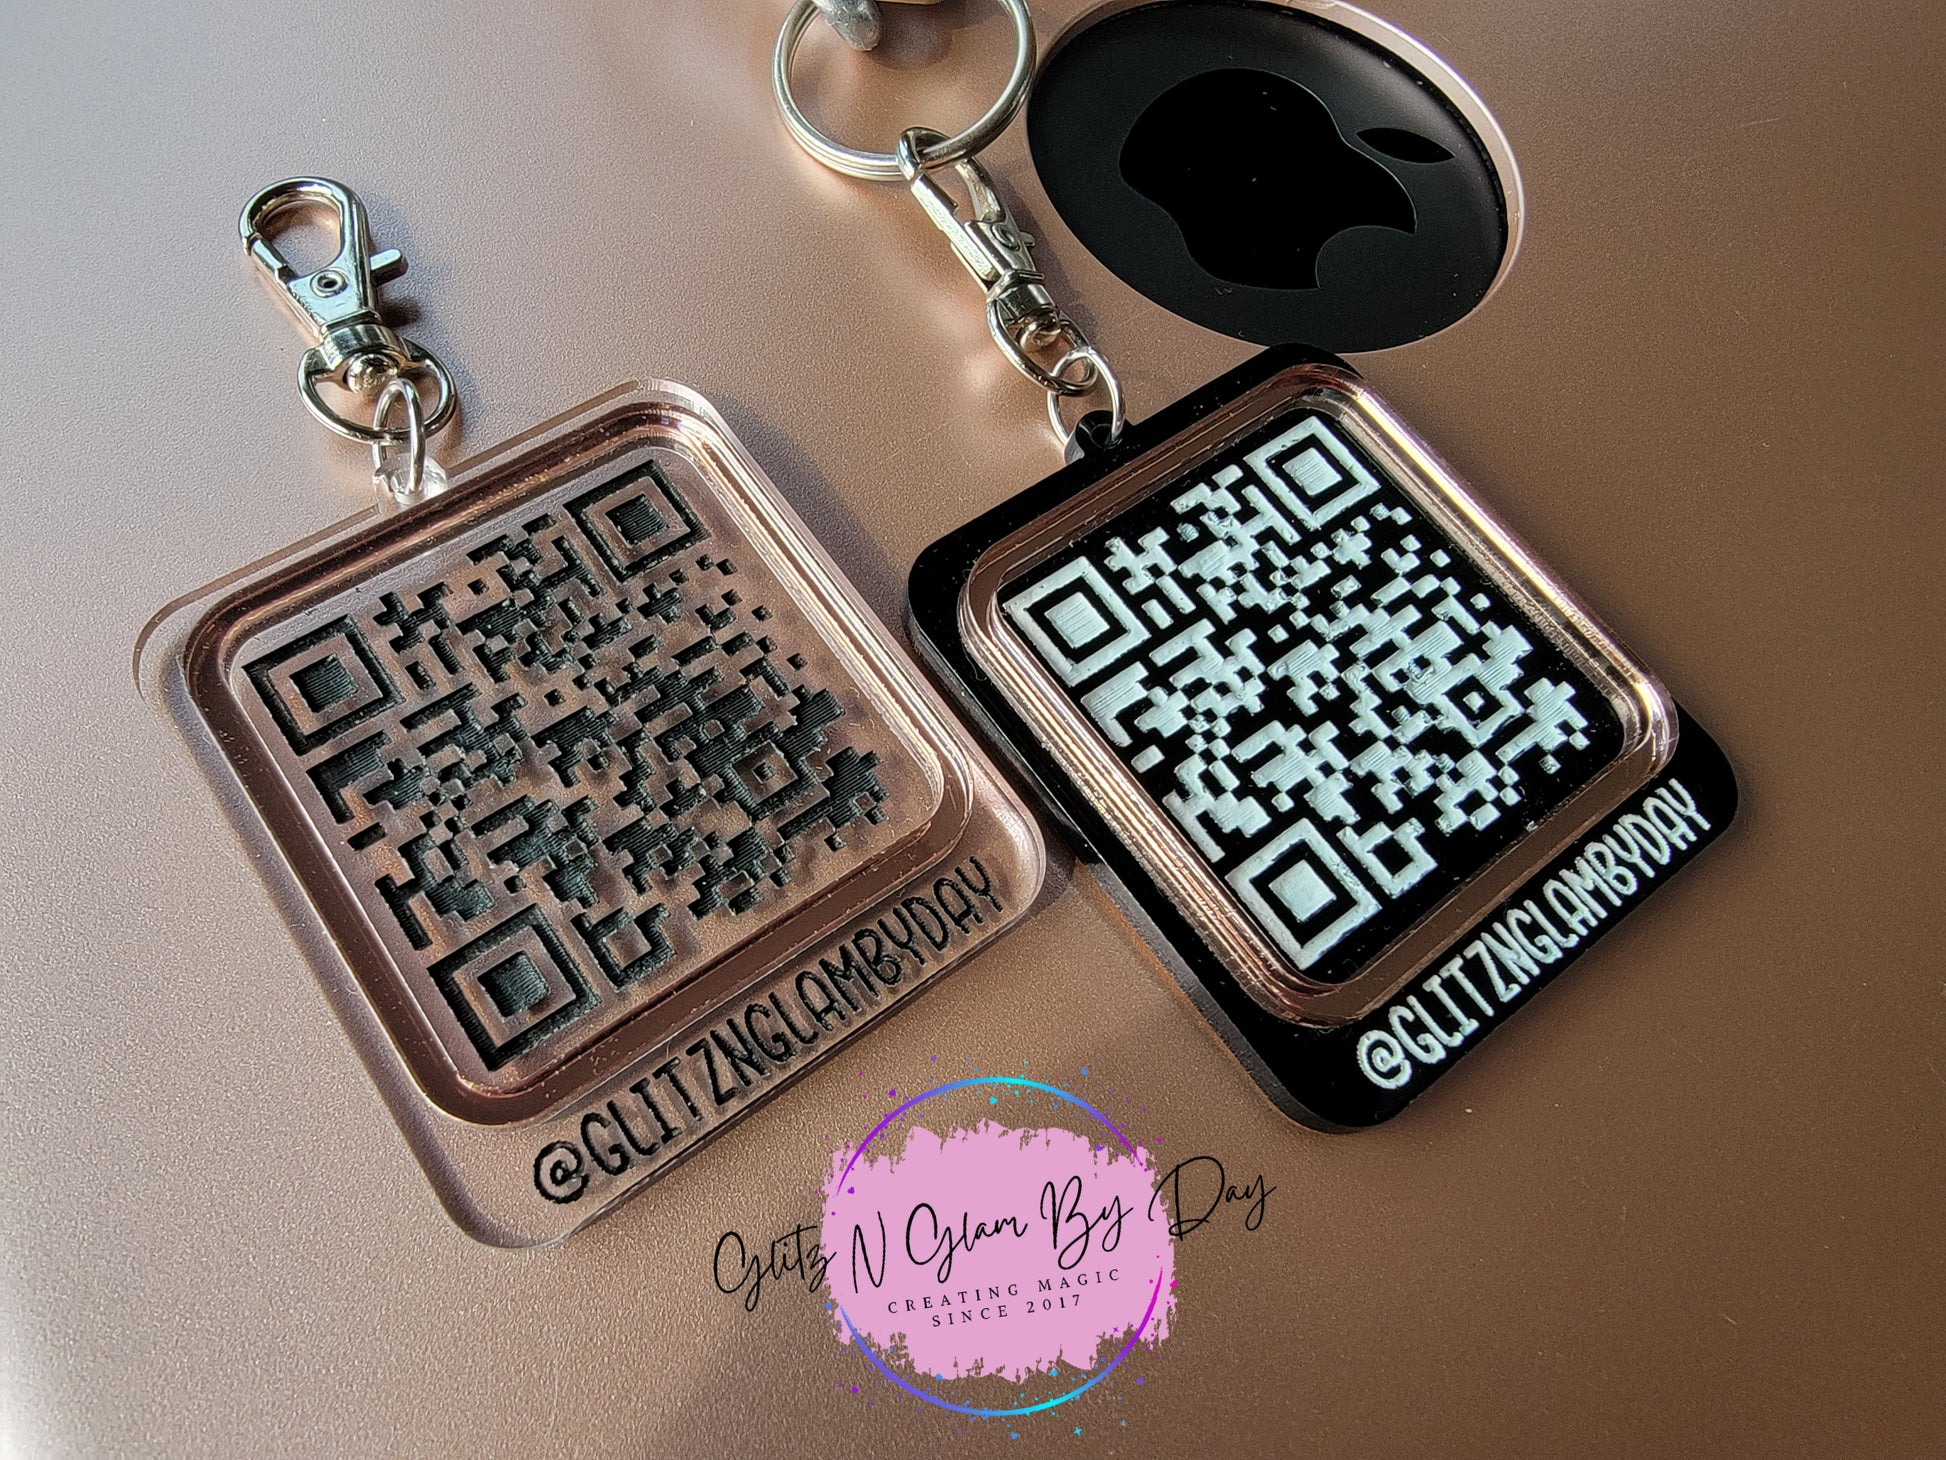 Qr Code Keychain - Glitz N Glam By Day LLC